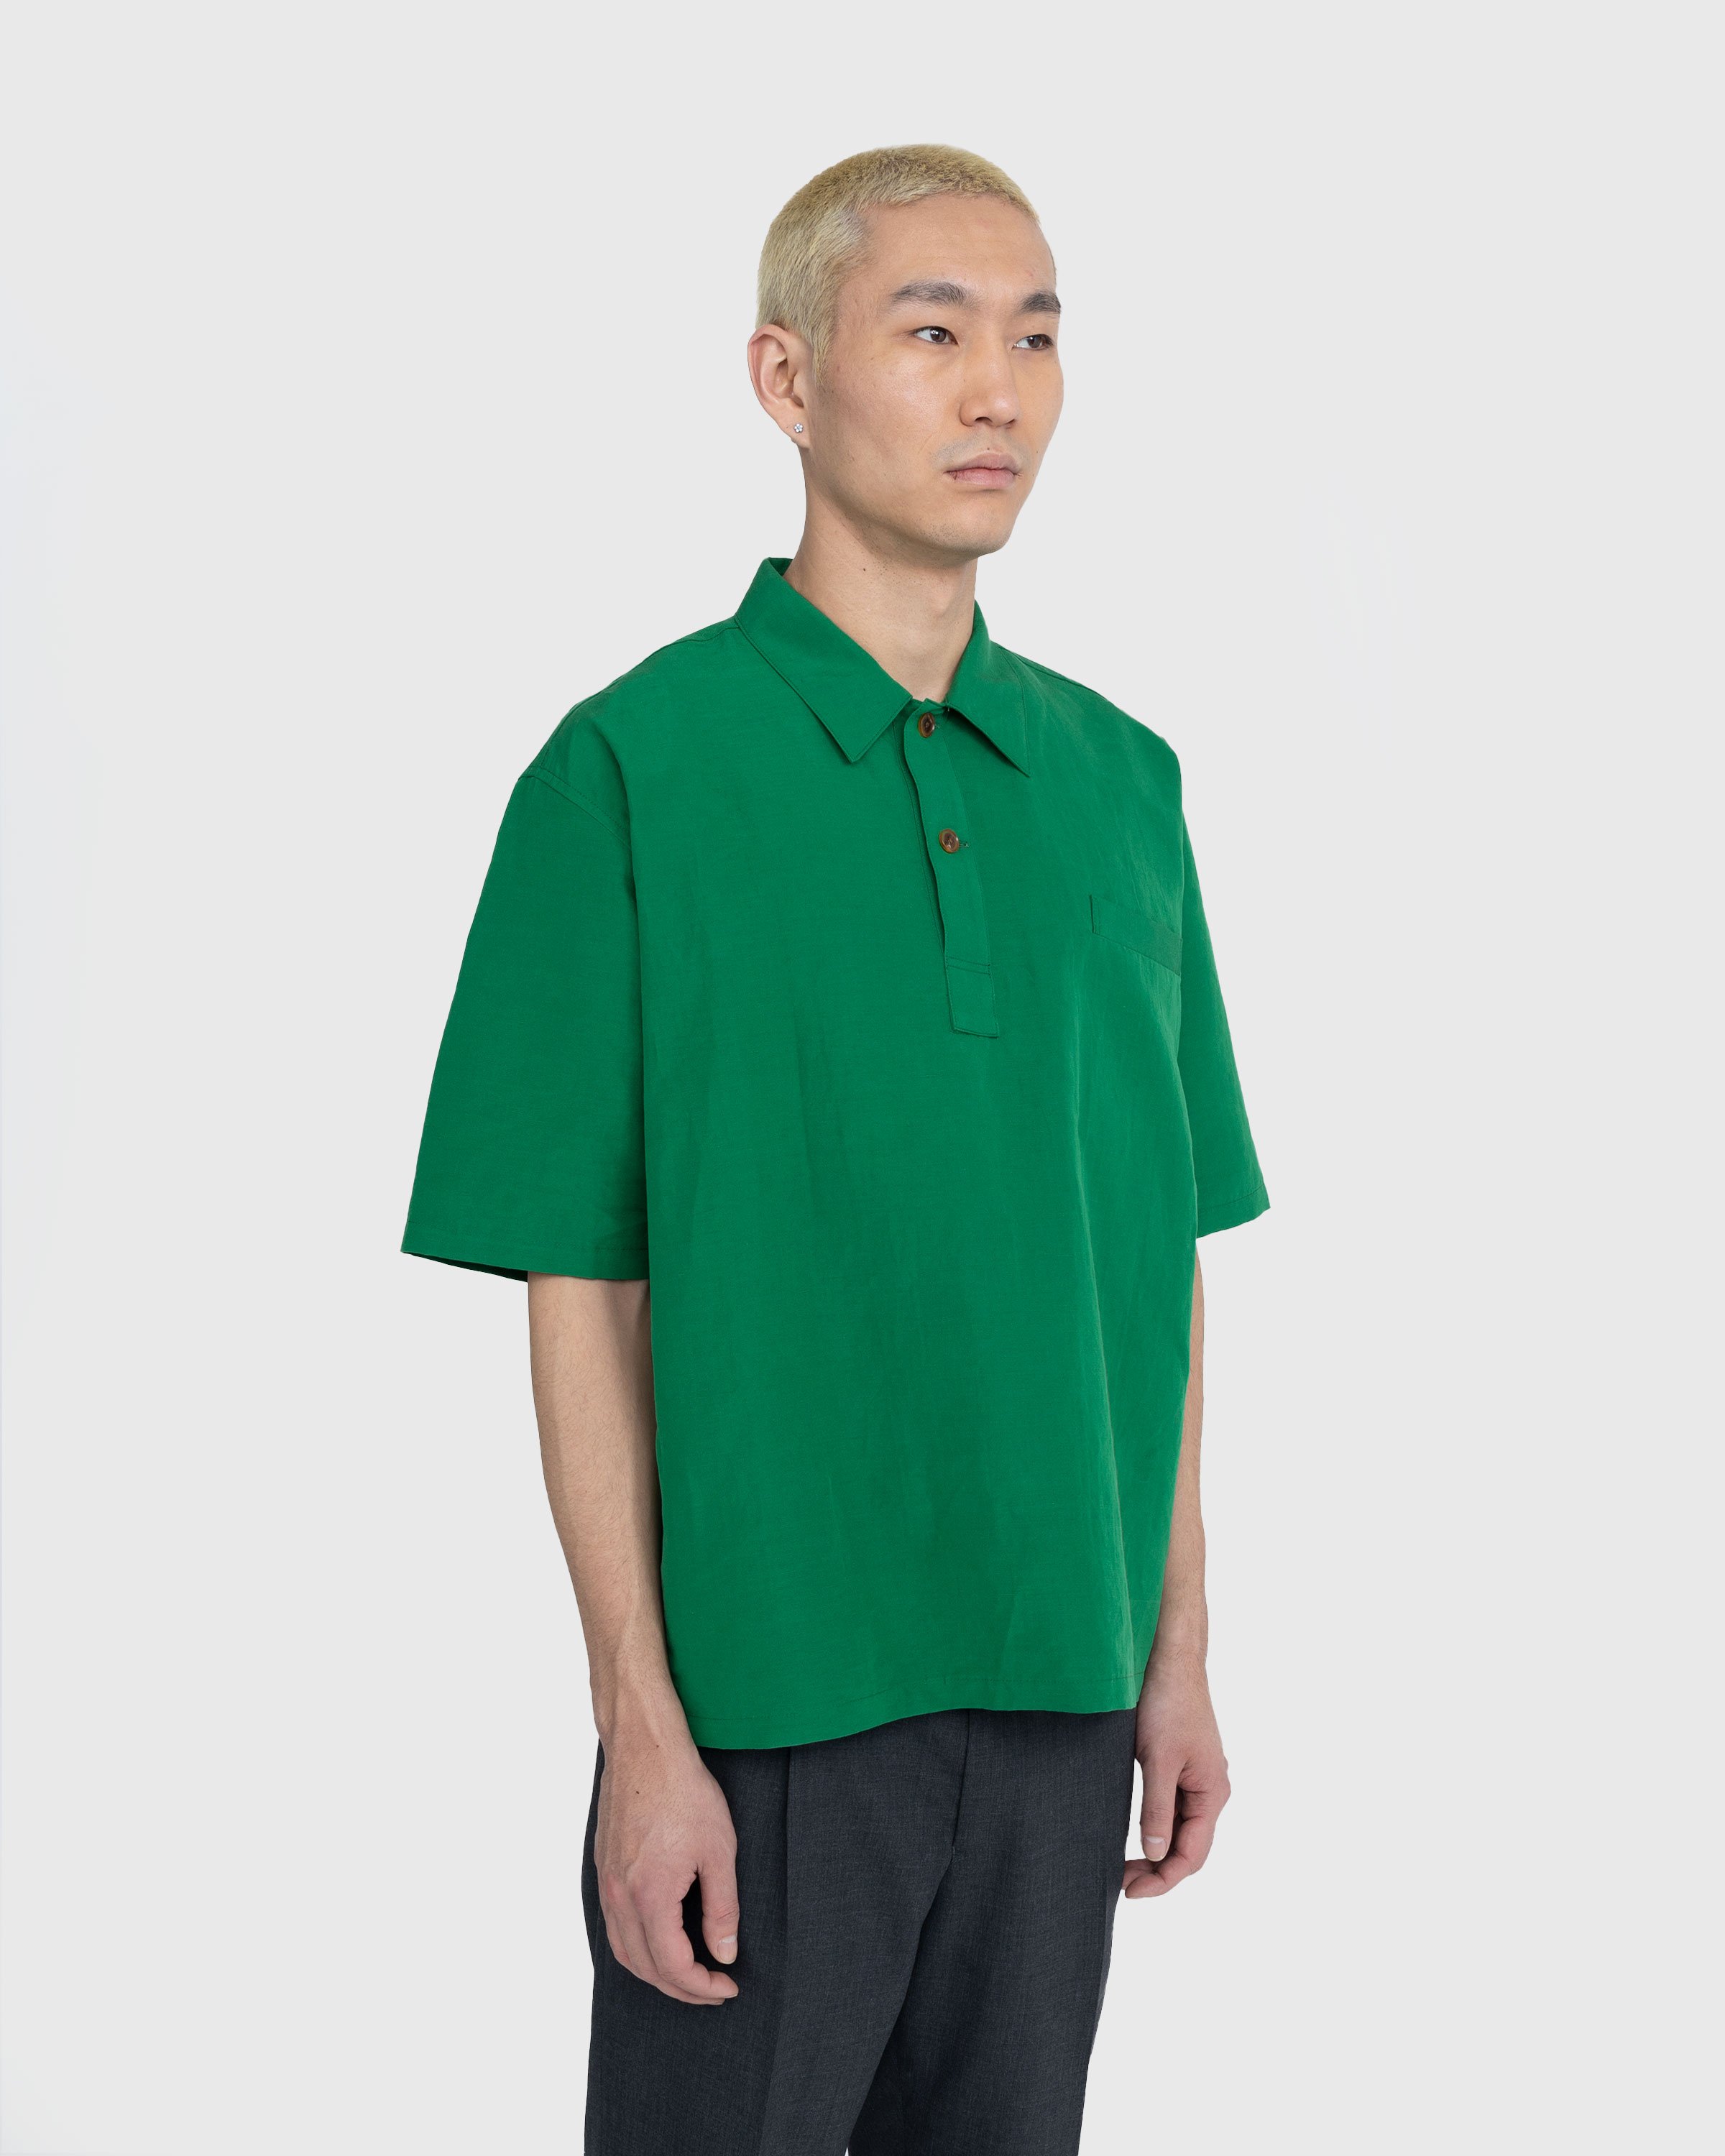 Auralee – High Density Finx Linen Weather Shirt Green | Highsnobiety Shop